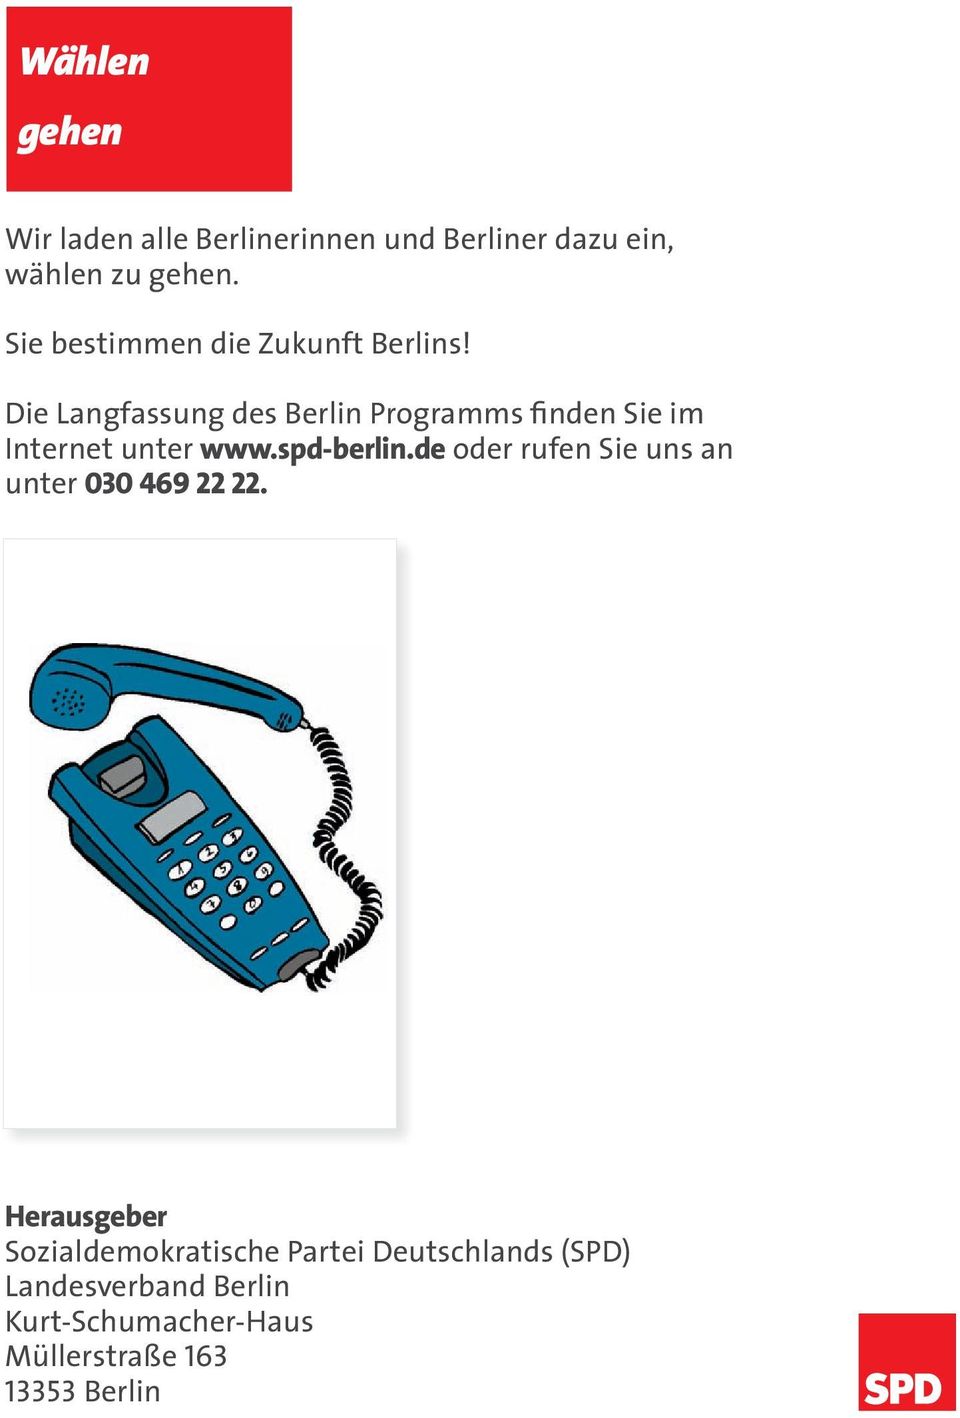 Die Langfassung des Berlin Programms finden Sie im Internet unter www.spd-berlin.